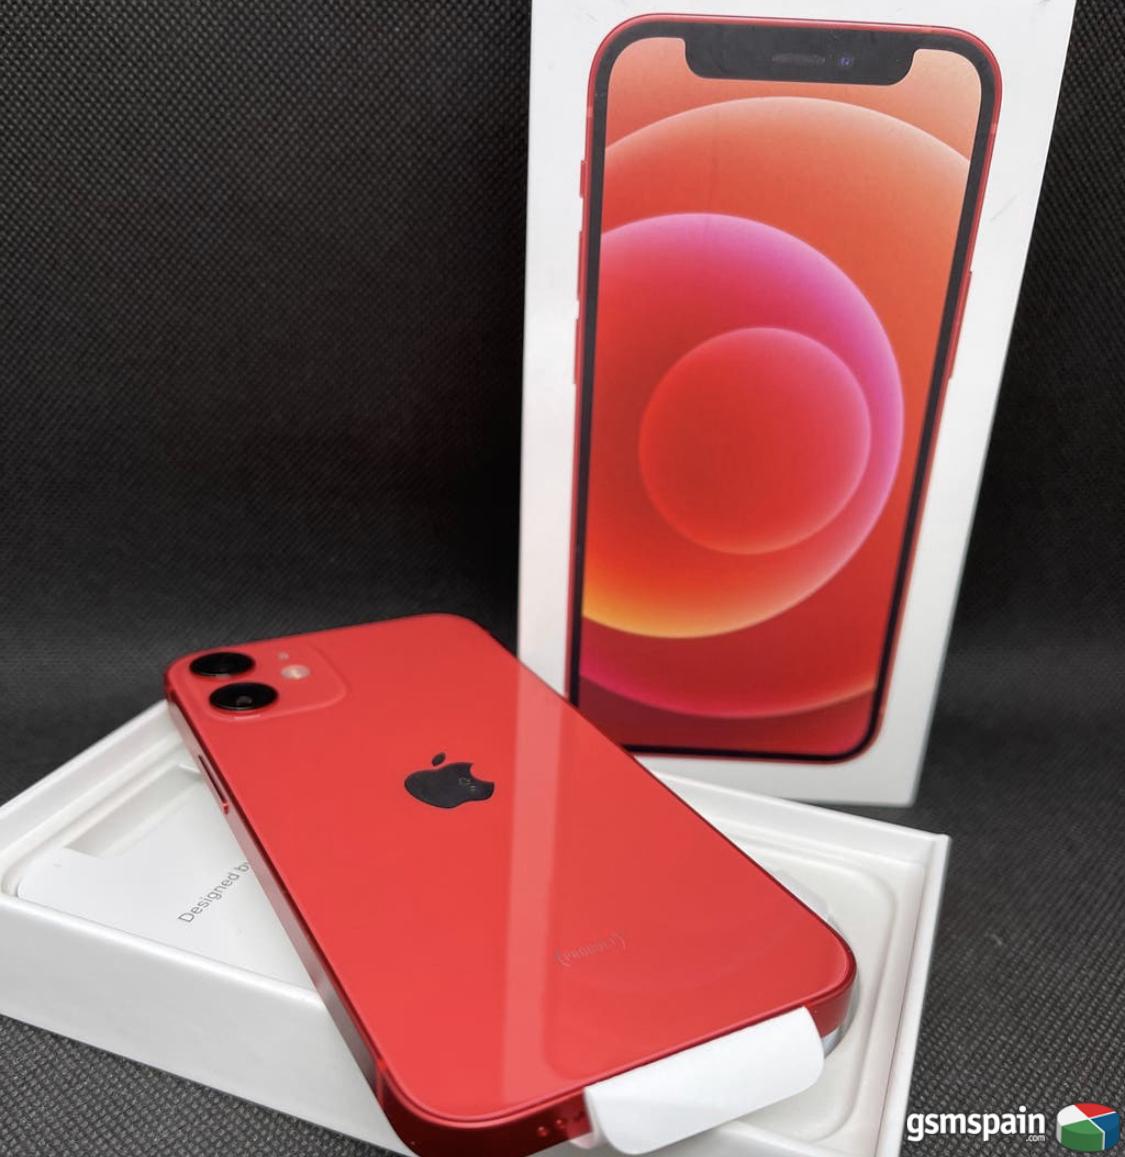 [VENDO] iPhone 12 mini 64gb, rojo!!! Solo 629